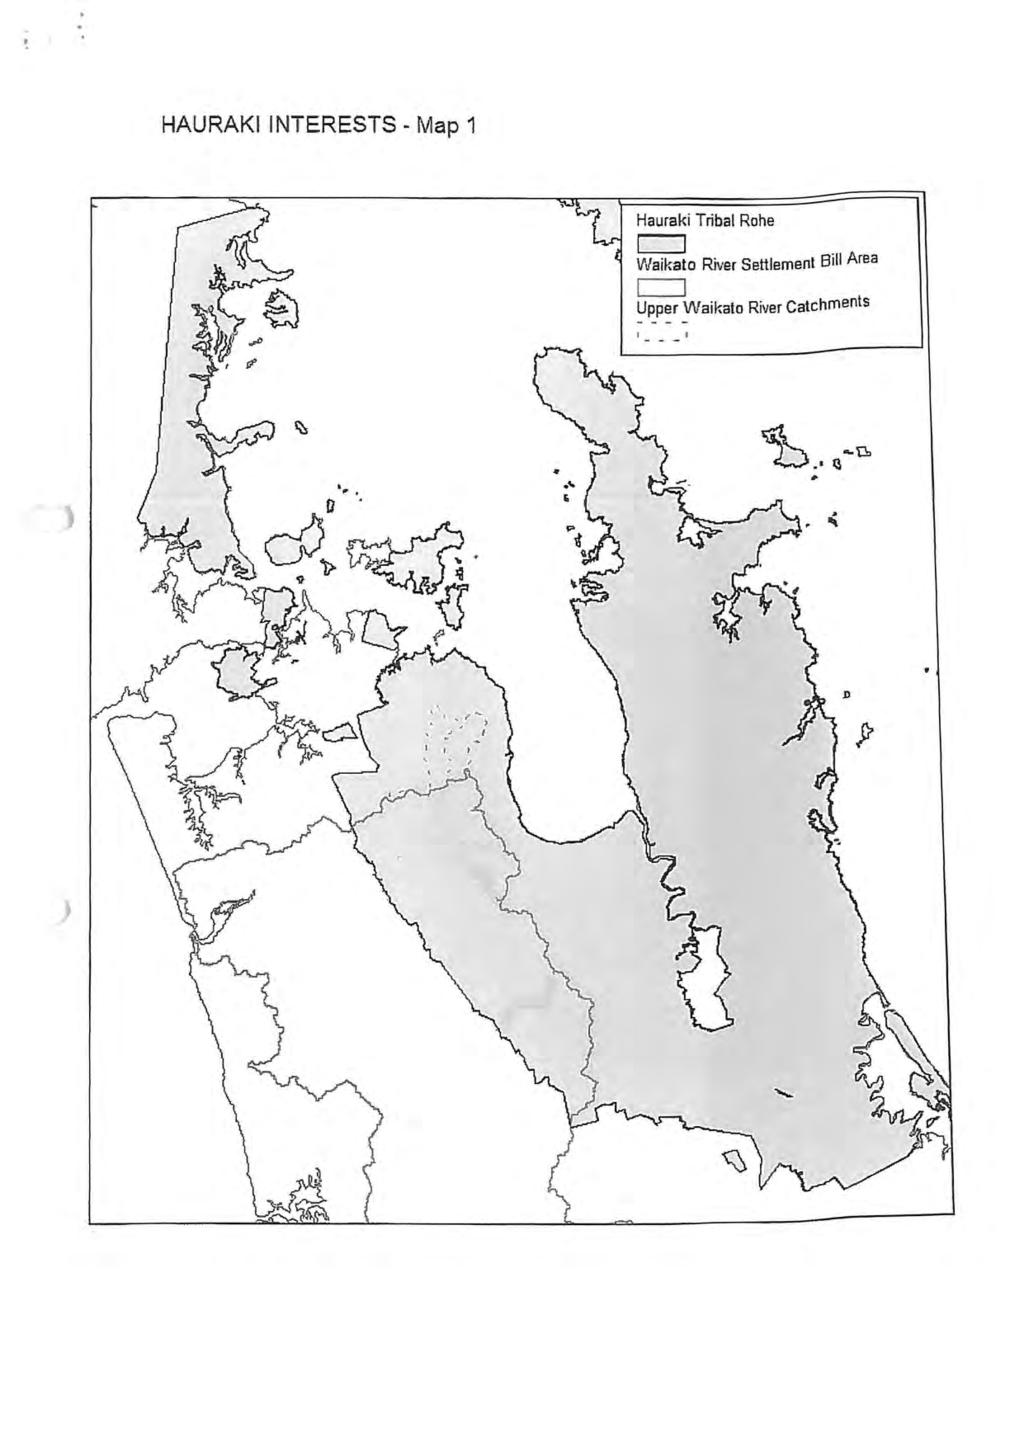 HAURAKI INTERESTS Map1 J Hauraki Tribal Rohe Waikato River